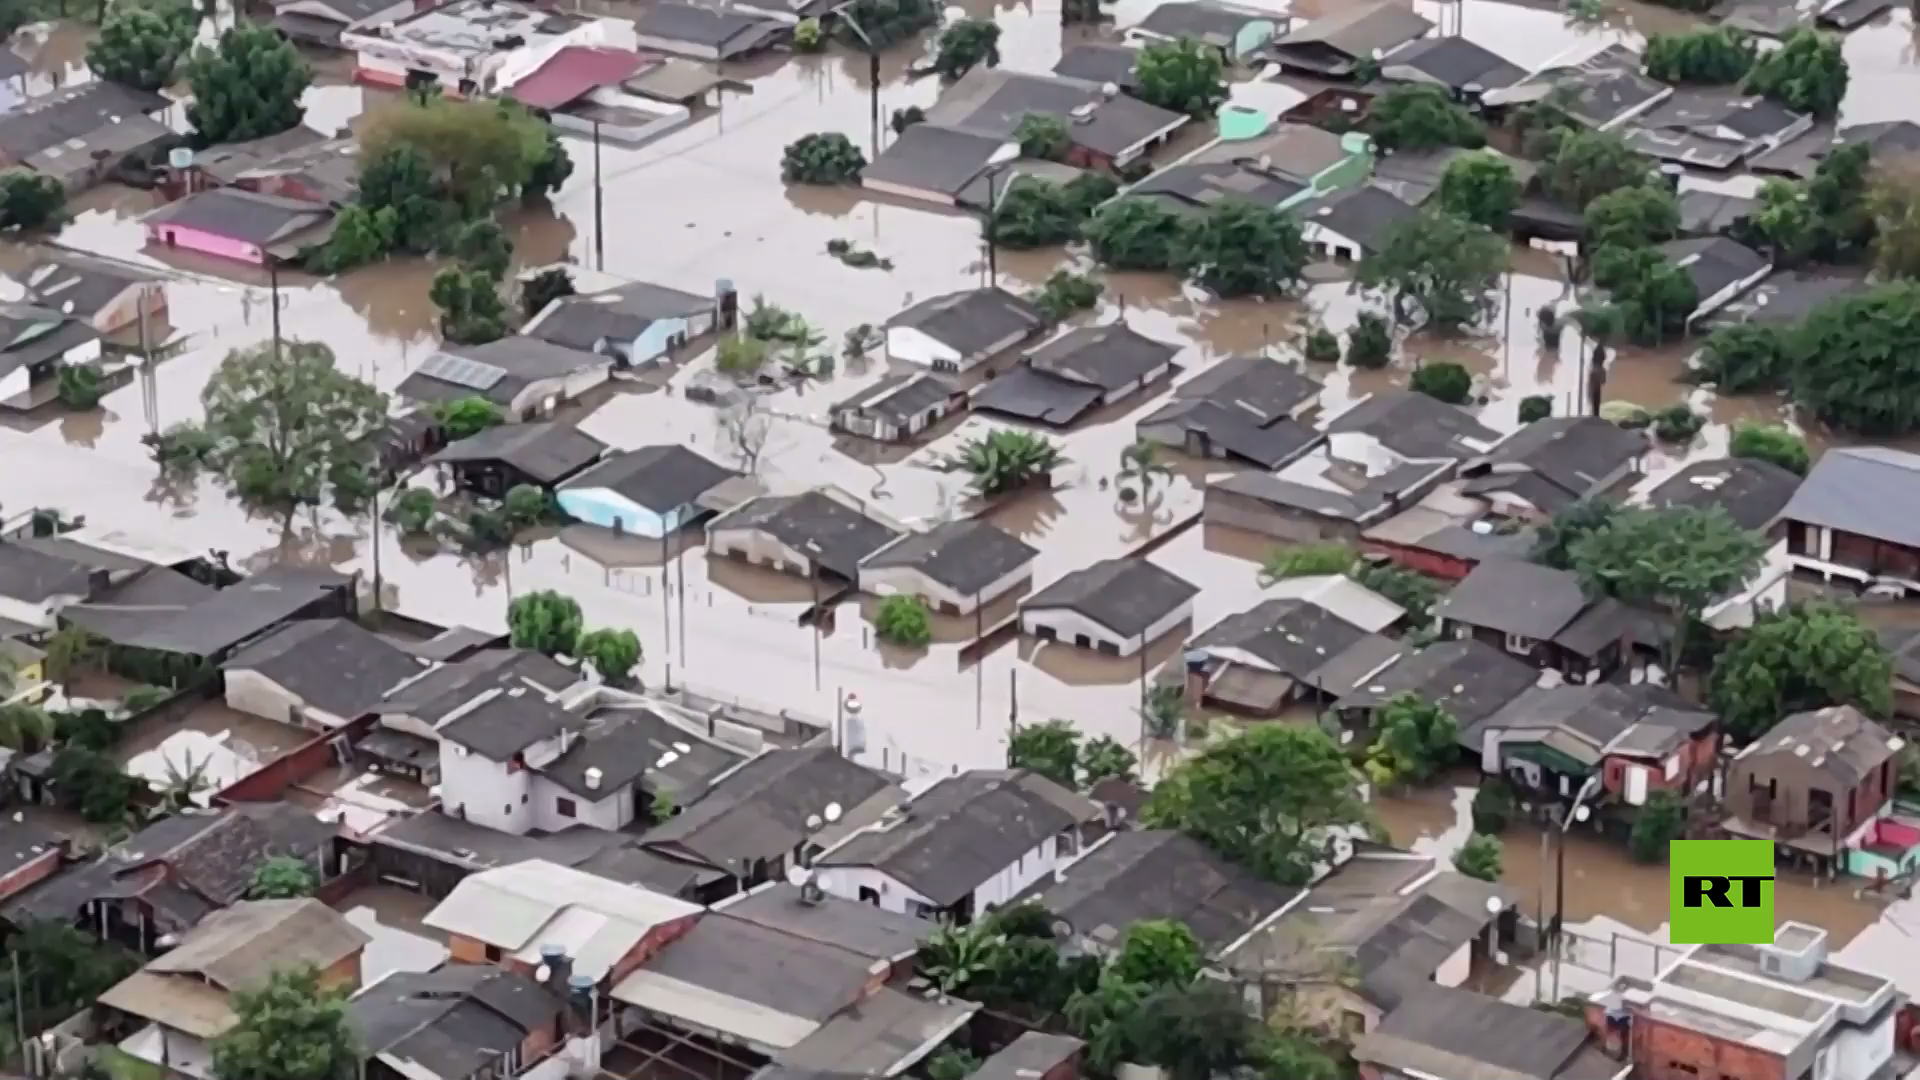 تصوير جوي يظهر آثار فيضانات عارمة في مدينة برازيلية